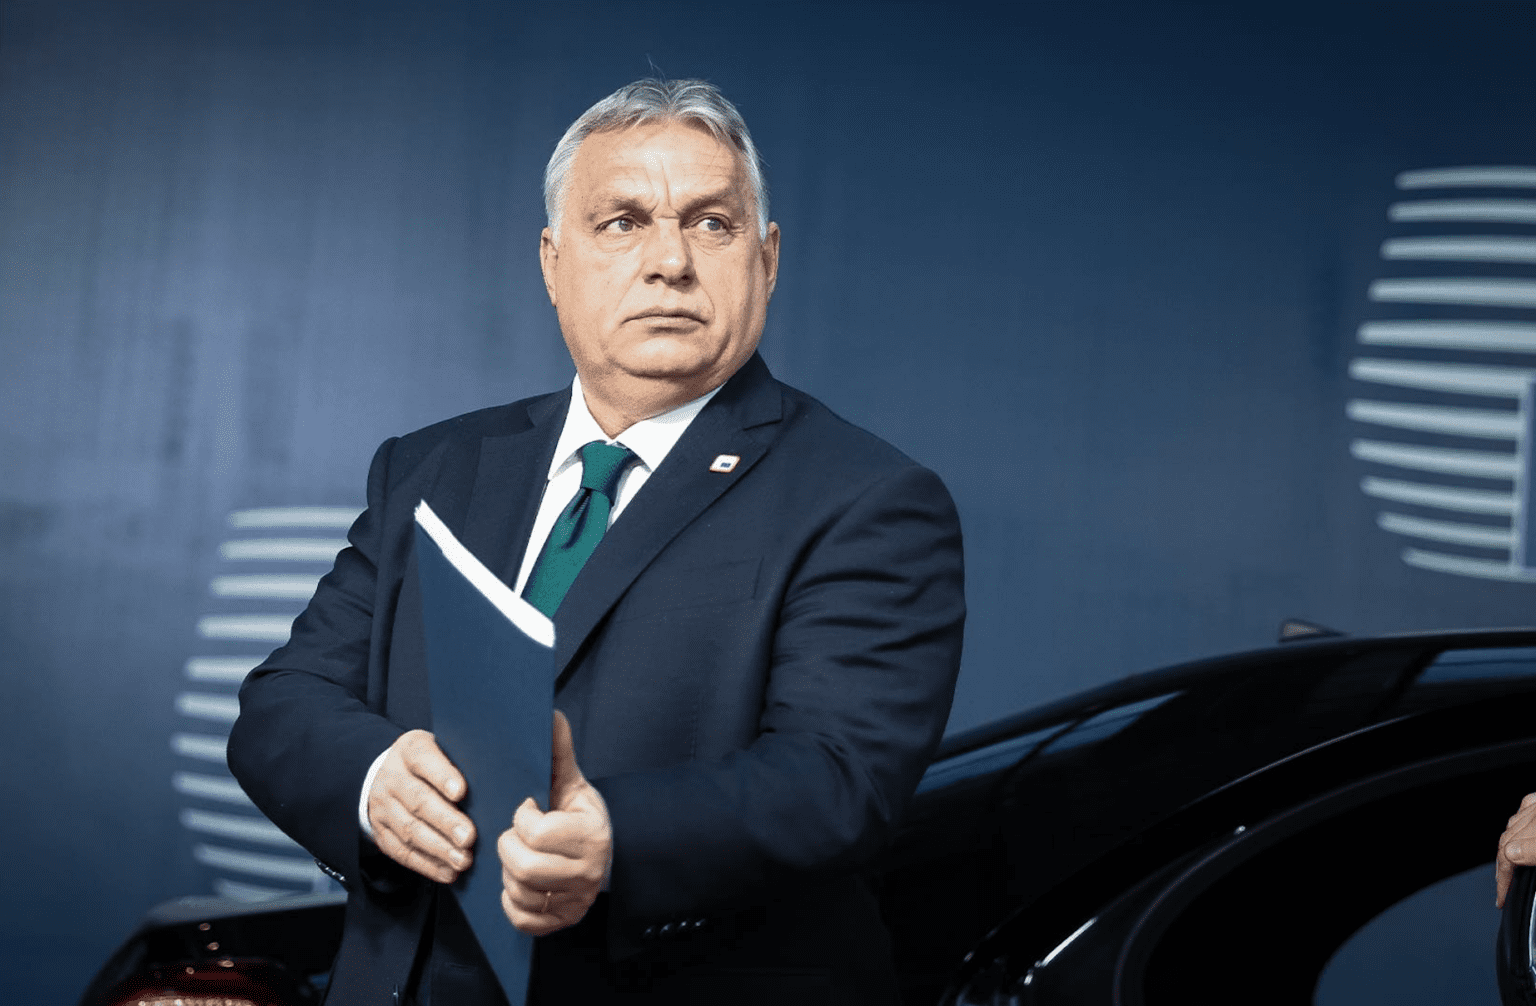 Viktor Orbán Receives Prestigious US Award